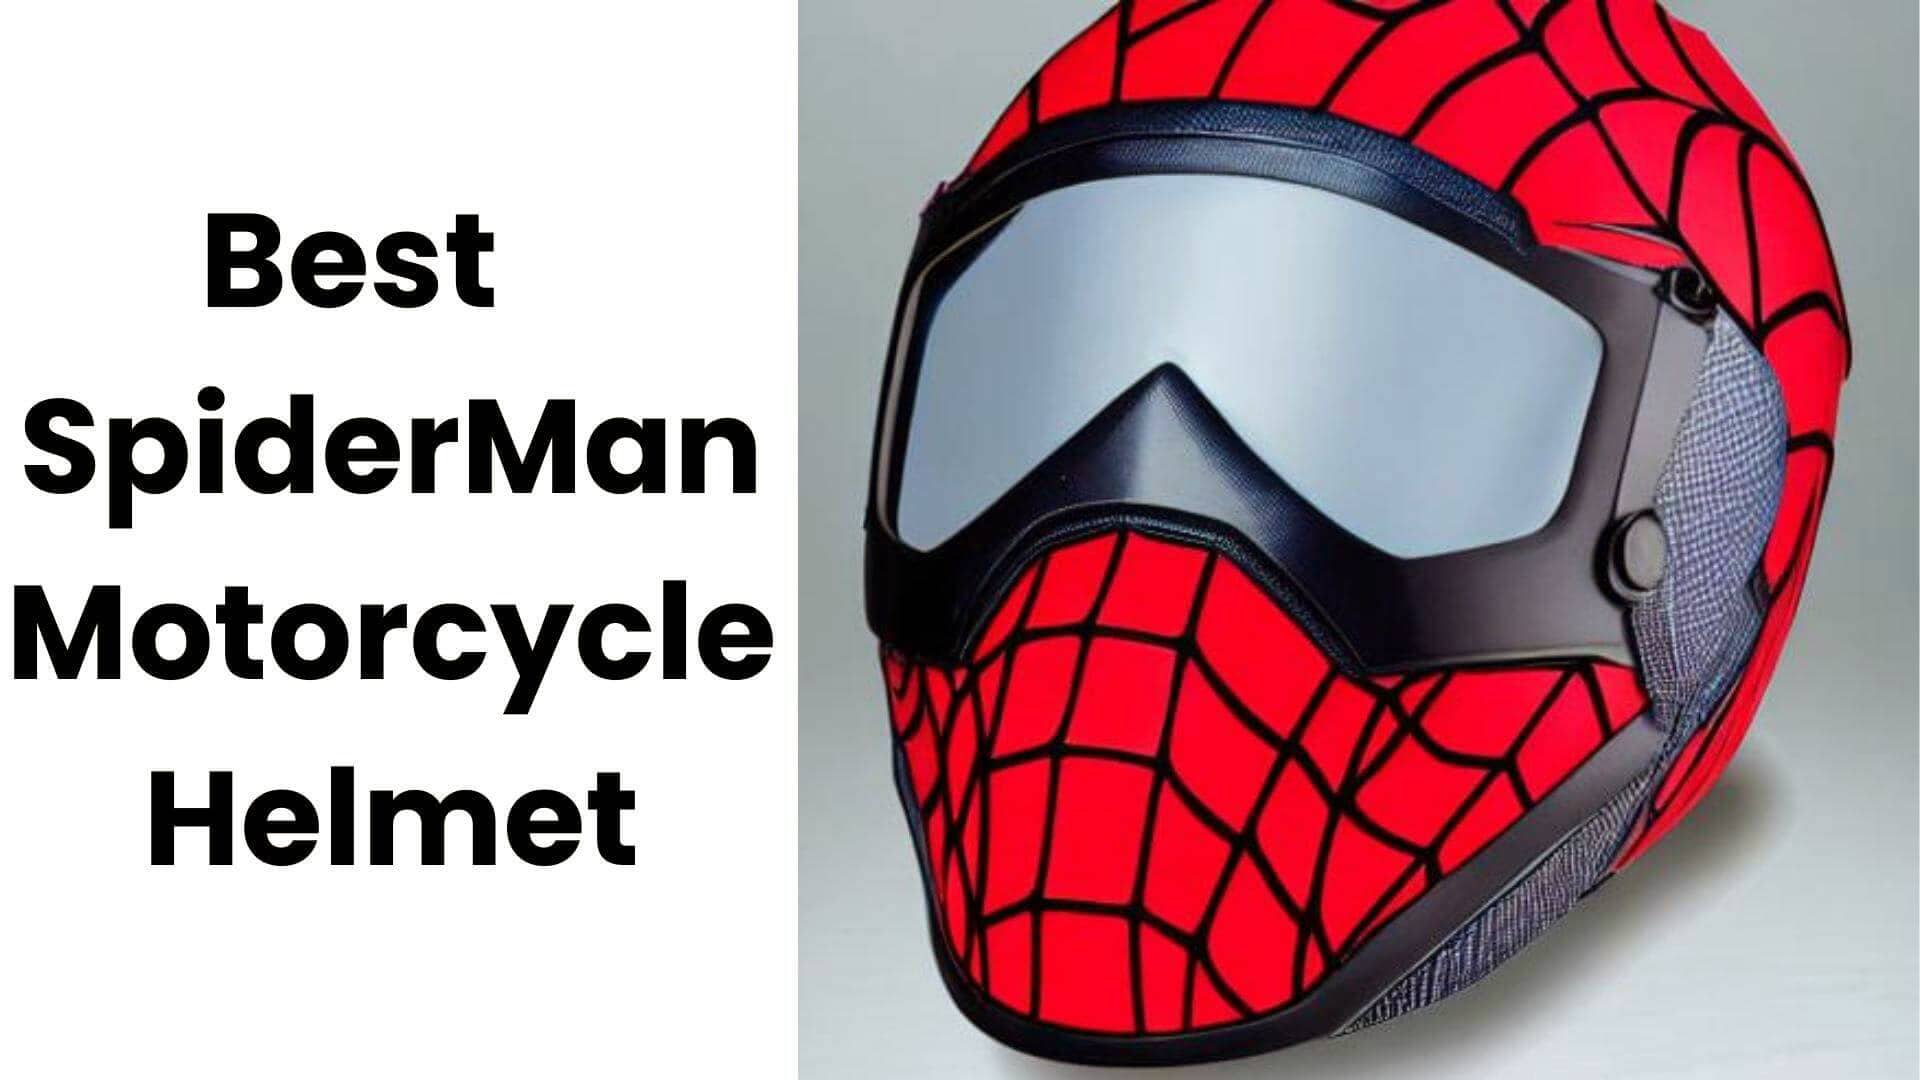 Spiderman Motorcycle Helmet For Kids – A Superhero’s Best Friend